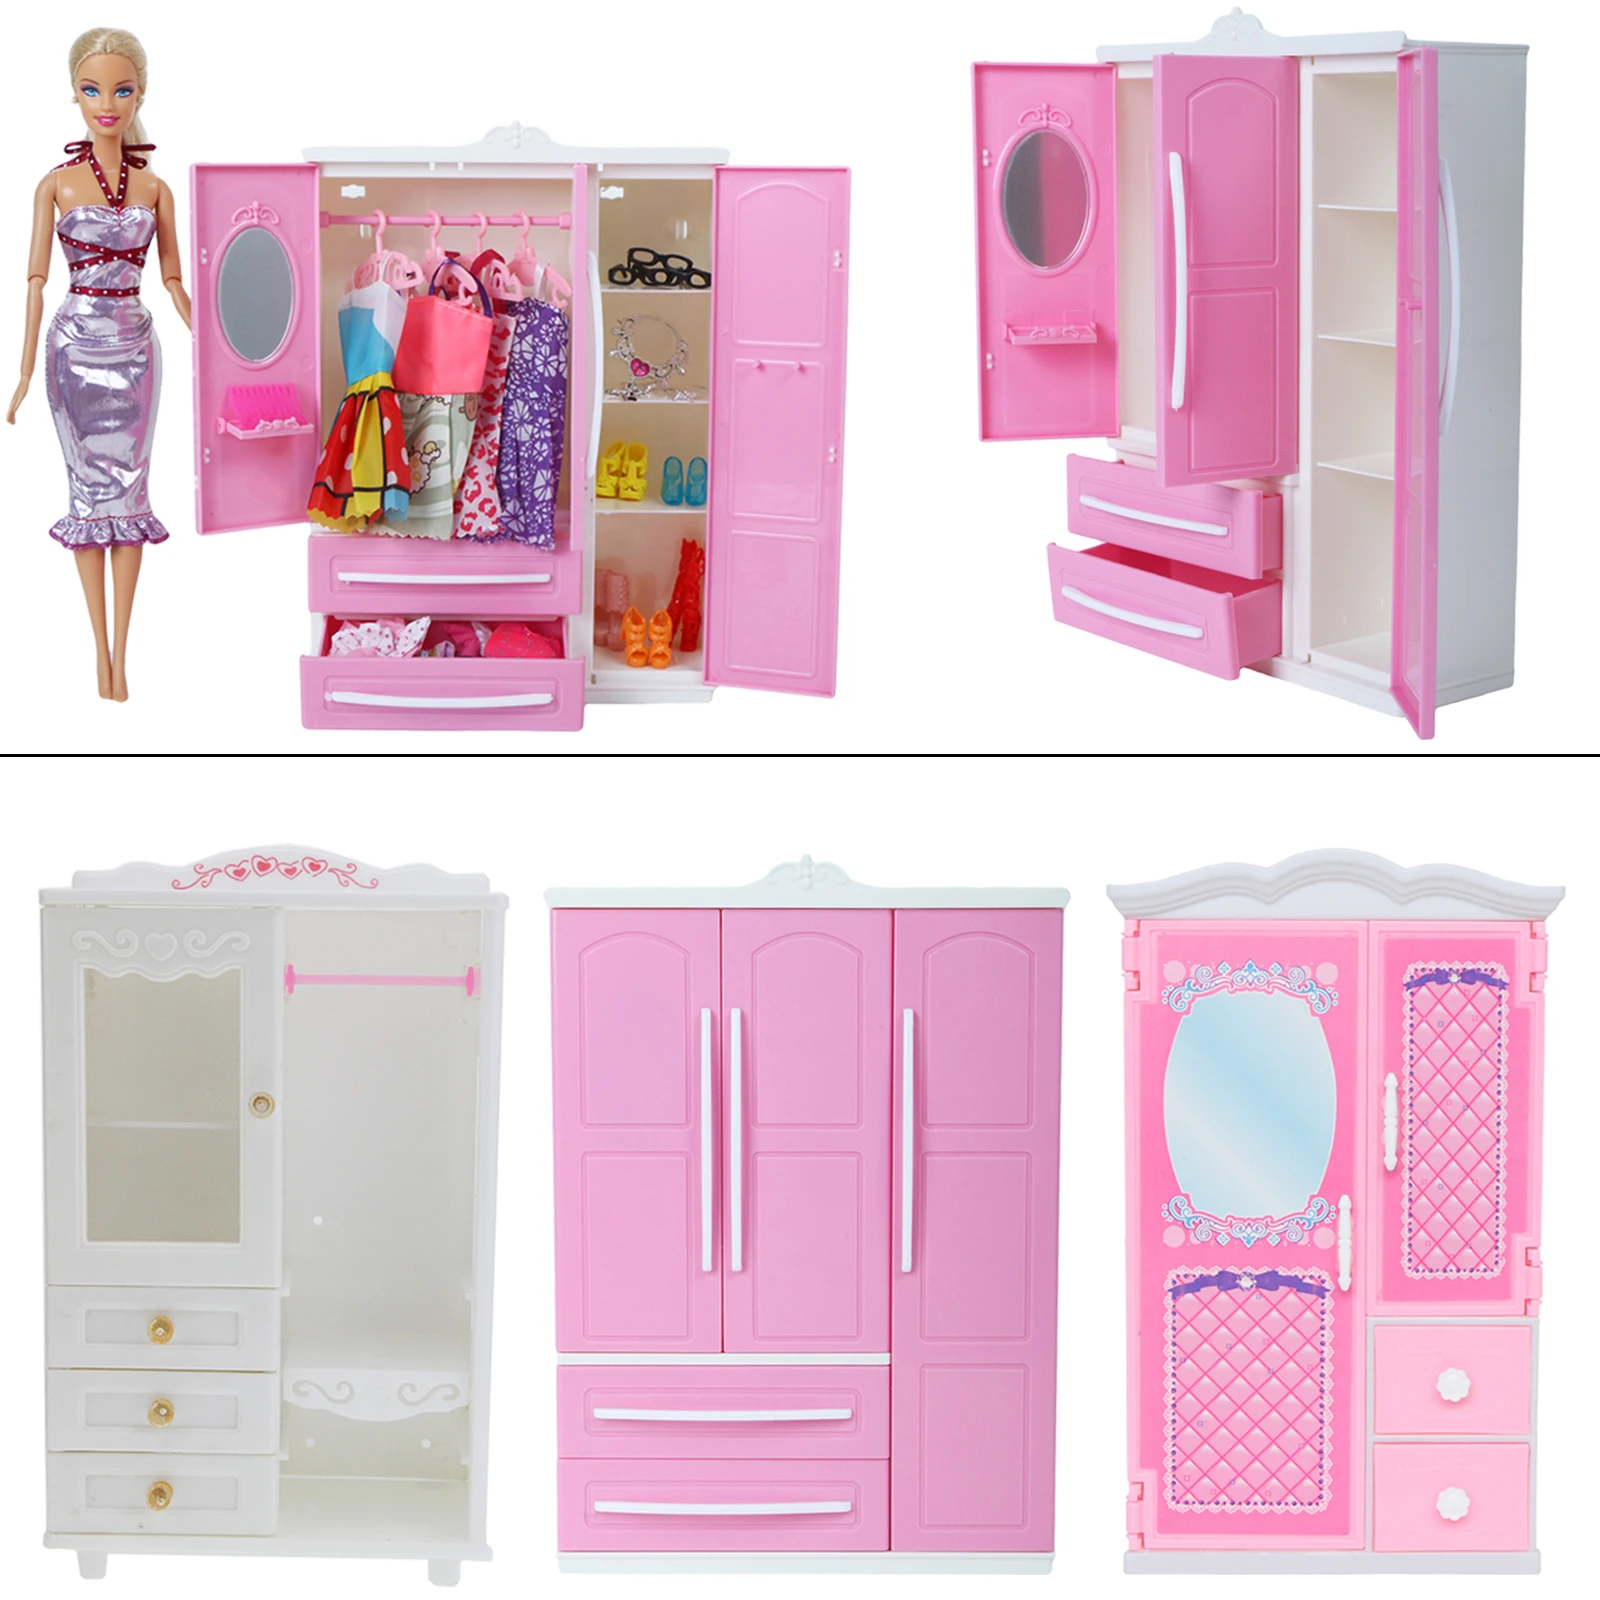 1 шт. высококачественный кукольный гардероб для куклы Барби Розовый Белый для ремонта мебели платье аксессуары для кукольной одежды игровой дом детский игрушка